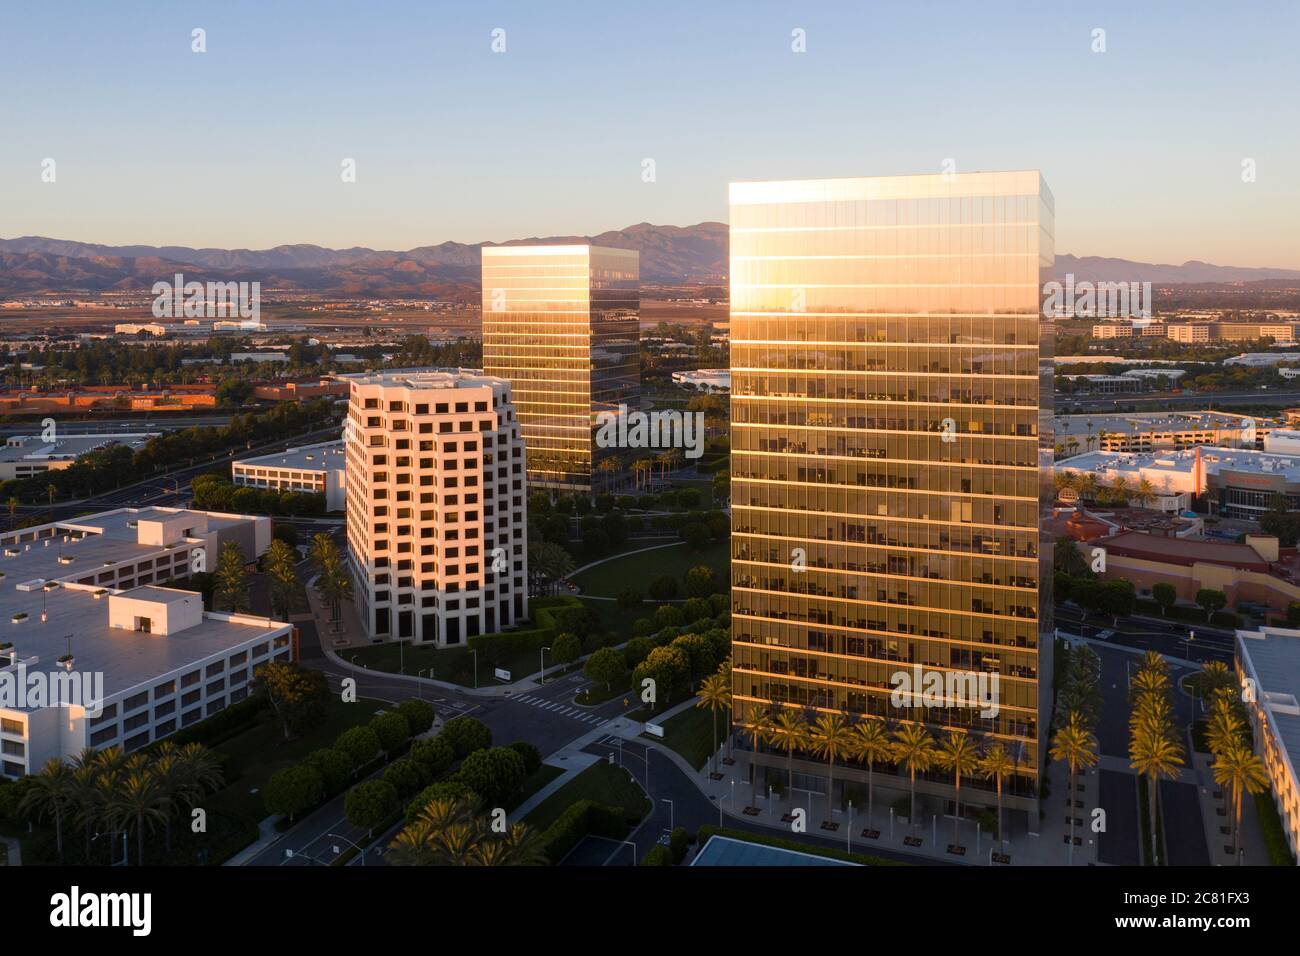 Vue aérienne du coucher de soleil reflétée dans les tours de bureaux du Spectrum Center, à Irvine, Californie Banque D'Images